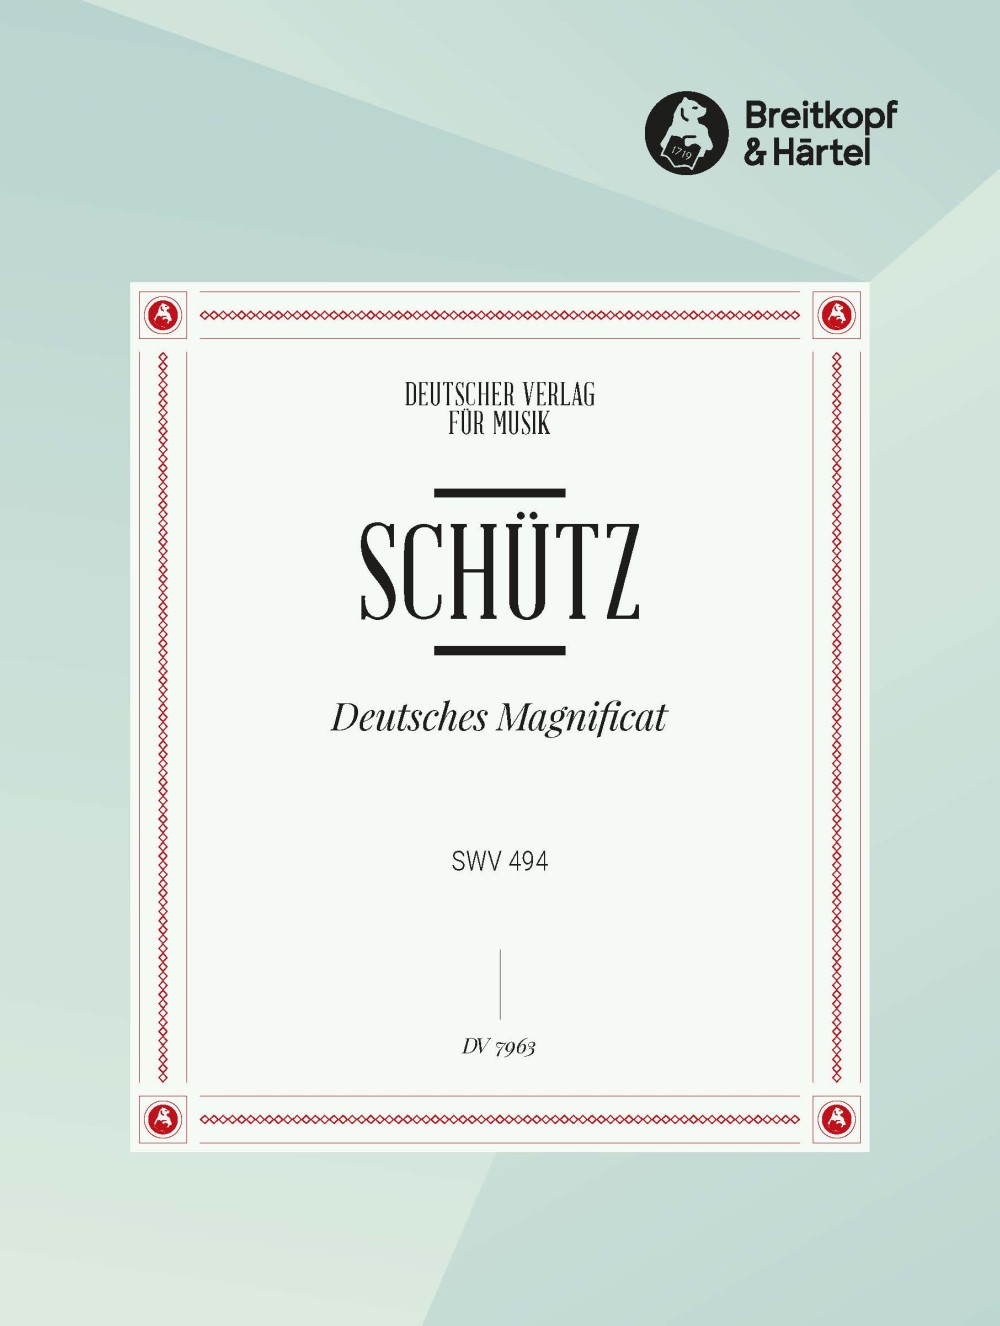 Deutsches Magnificat Swv494 (SCHUTZ HEINRICH)